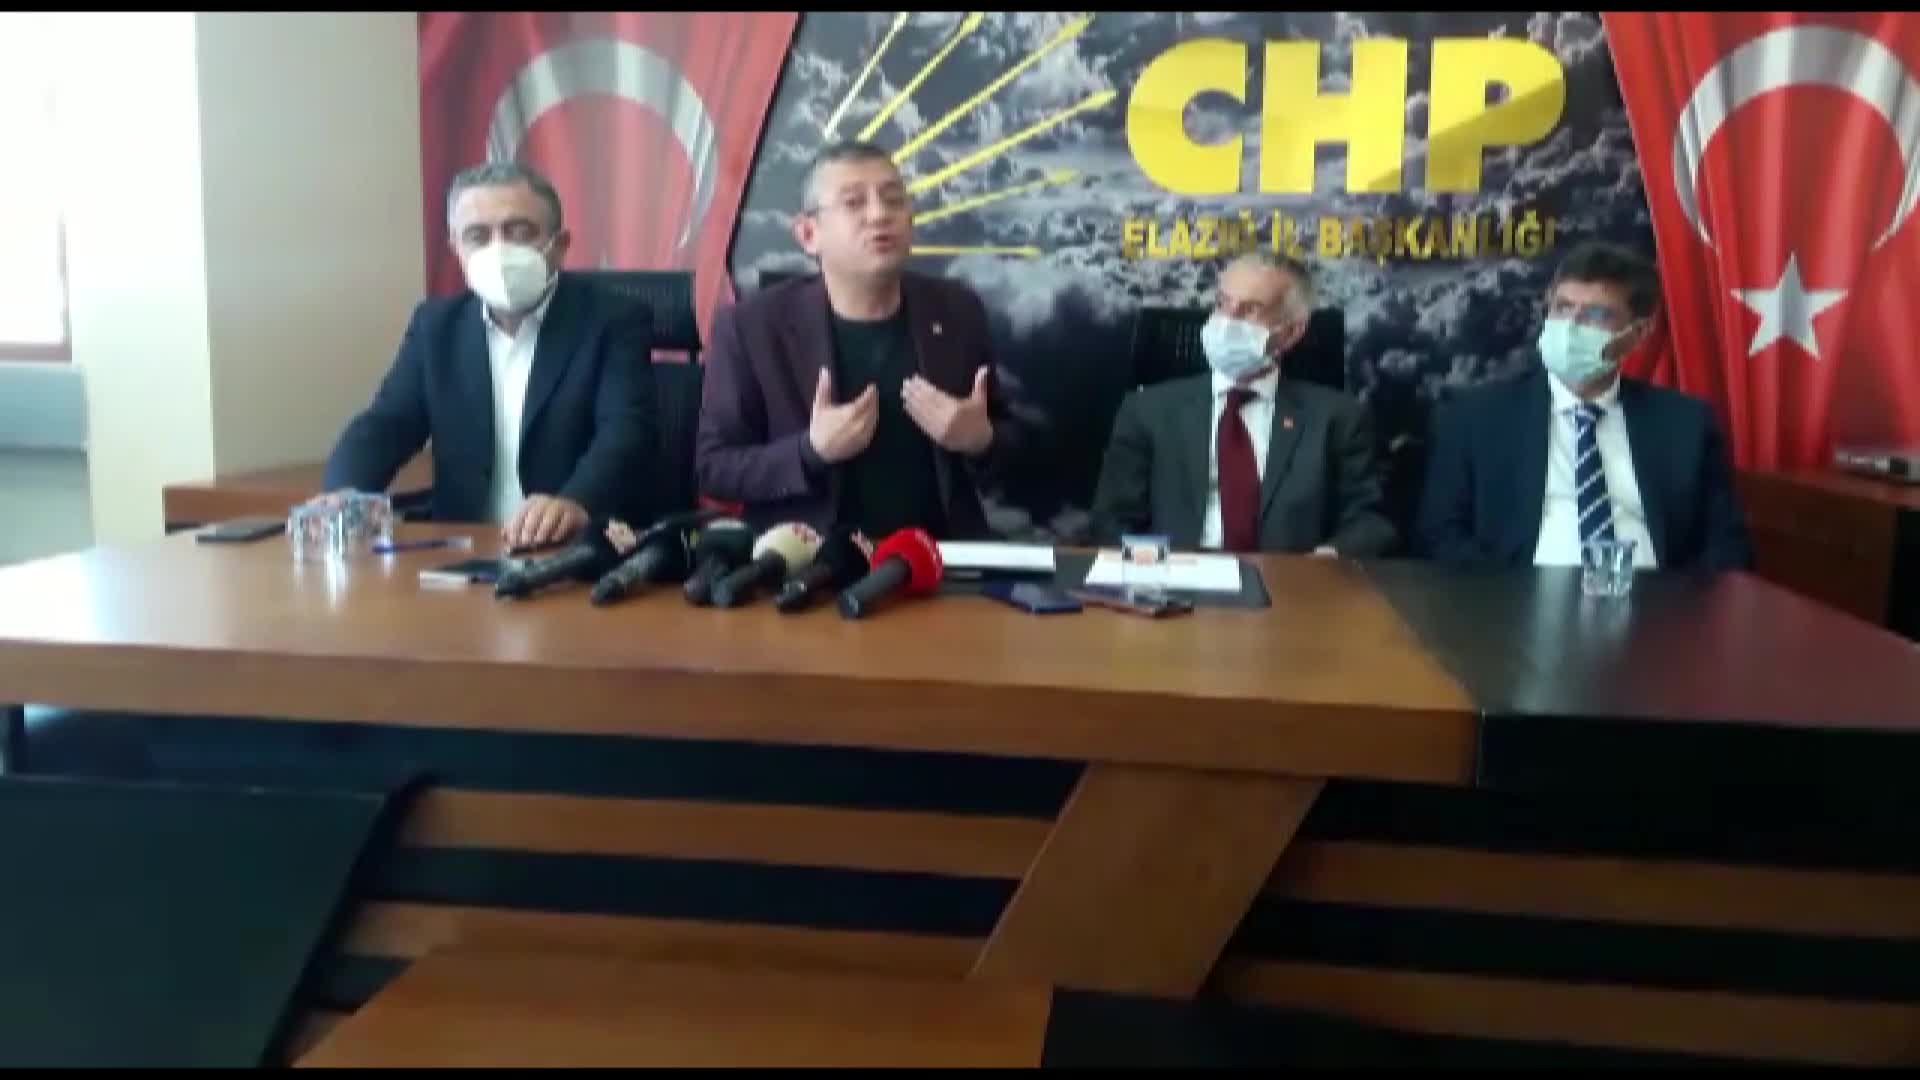 CHP'li Özgür Özel: "İtirazımız Diyarbakır annelerini duyanların Cumartesi annelerini duymamasına"